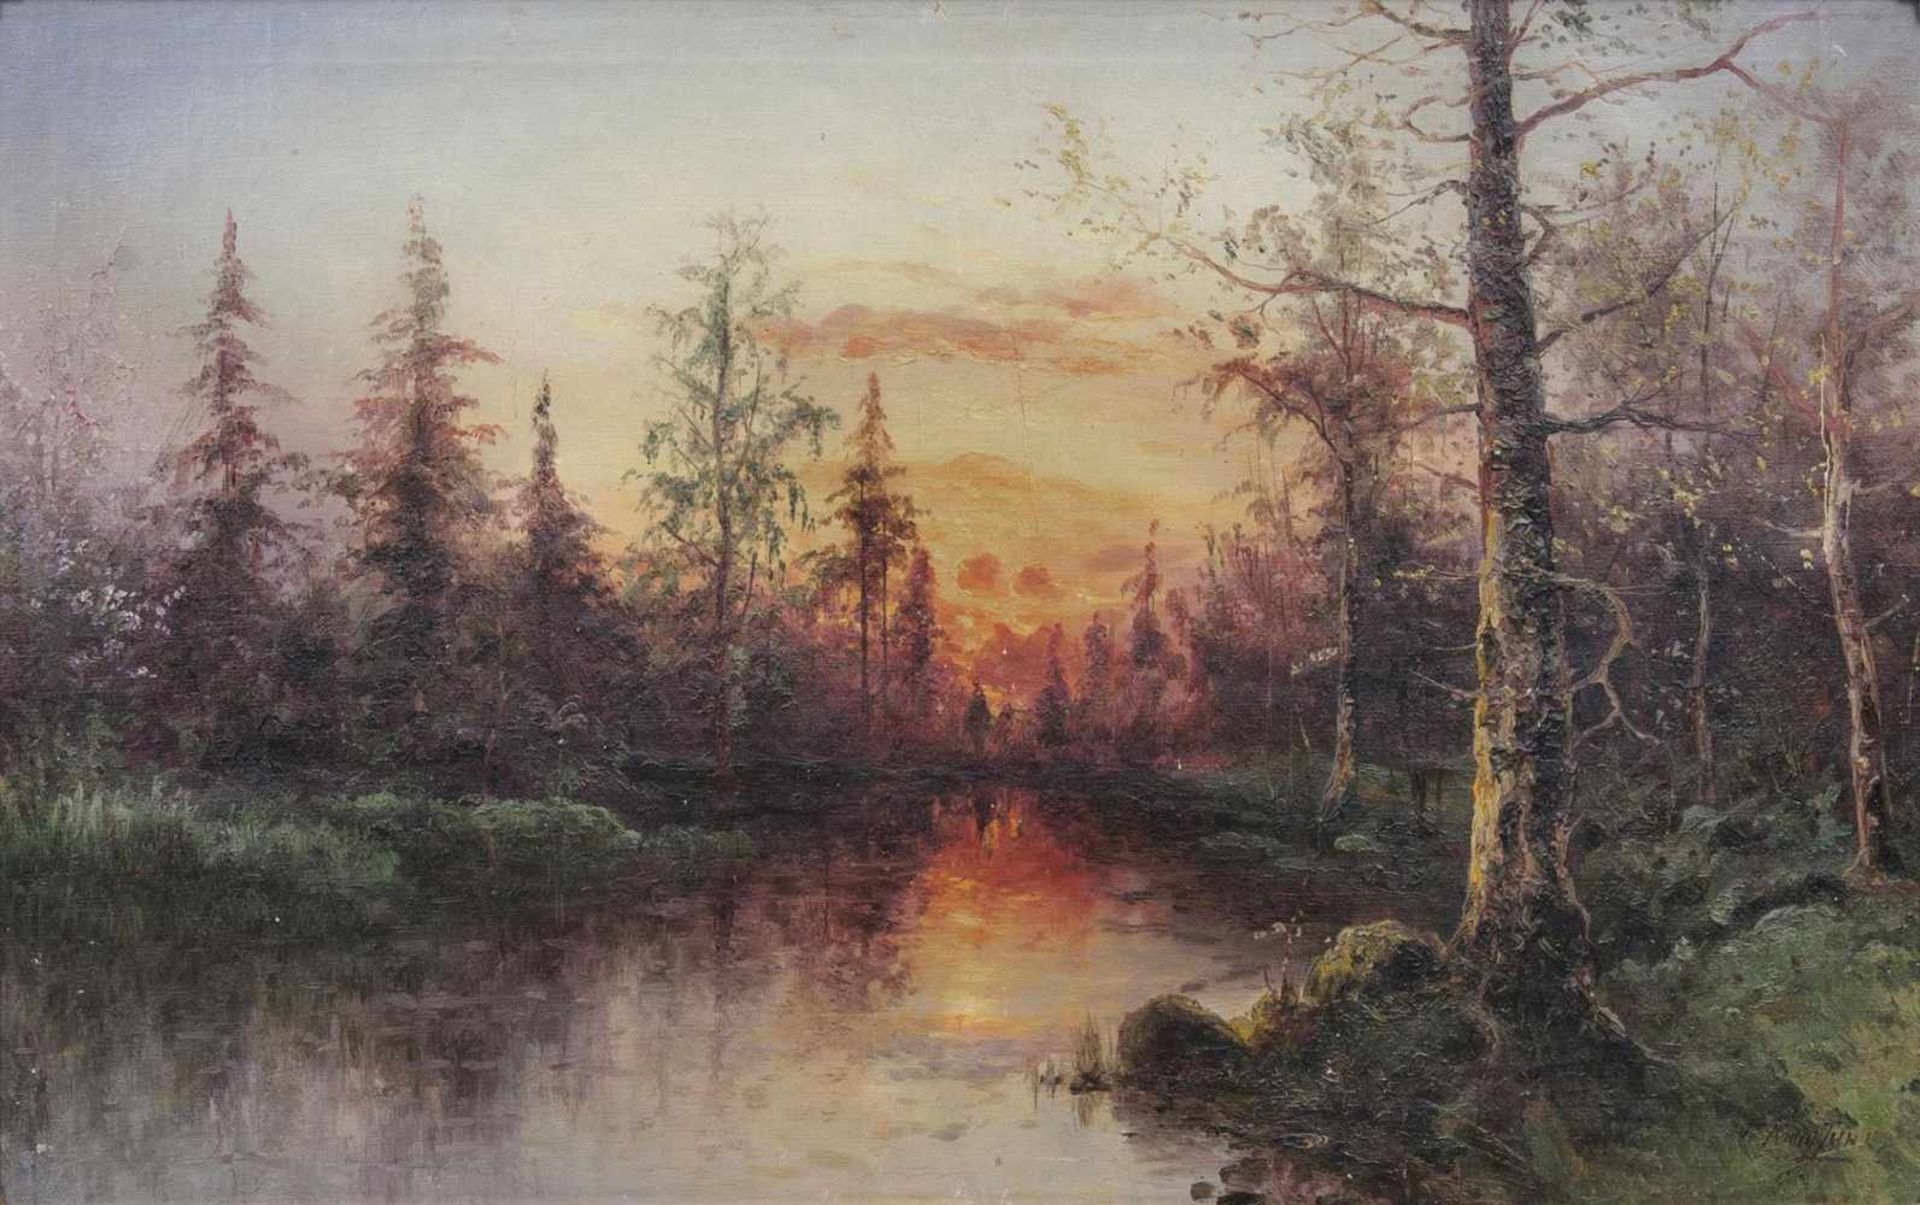 Grigorij Ivanovich Kapustin(Odessa 1865 - 1925)Abend im WaldÖl/Lw., 47,5 x 77 cm, r. u. kyrillisch